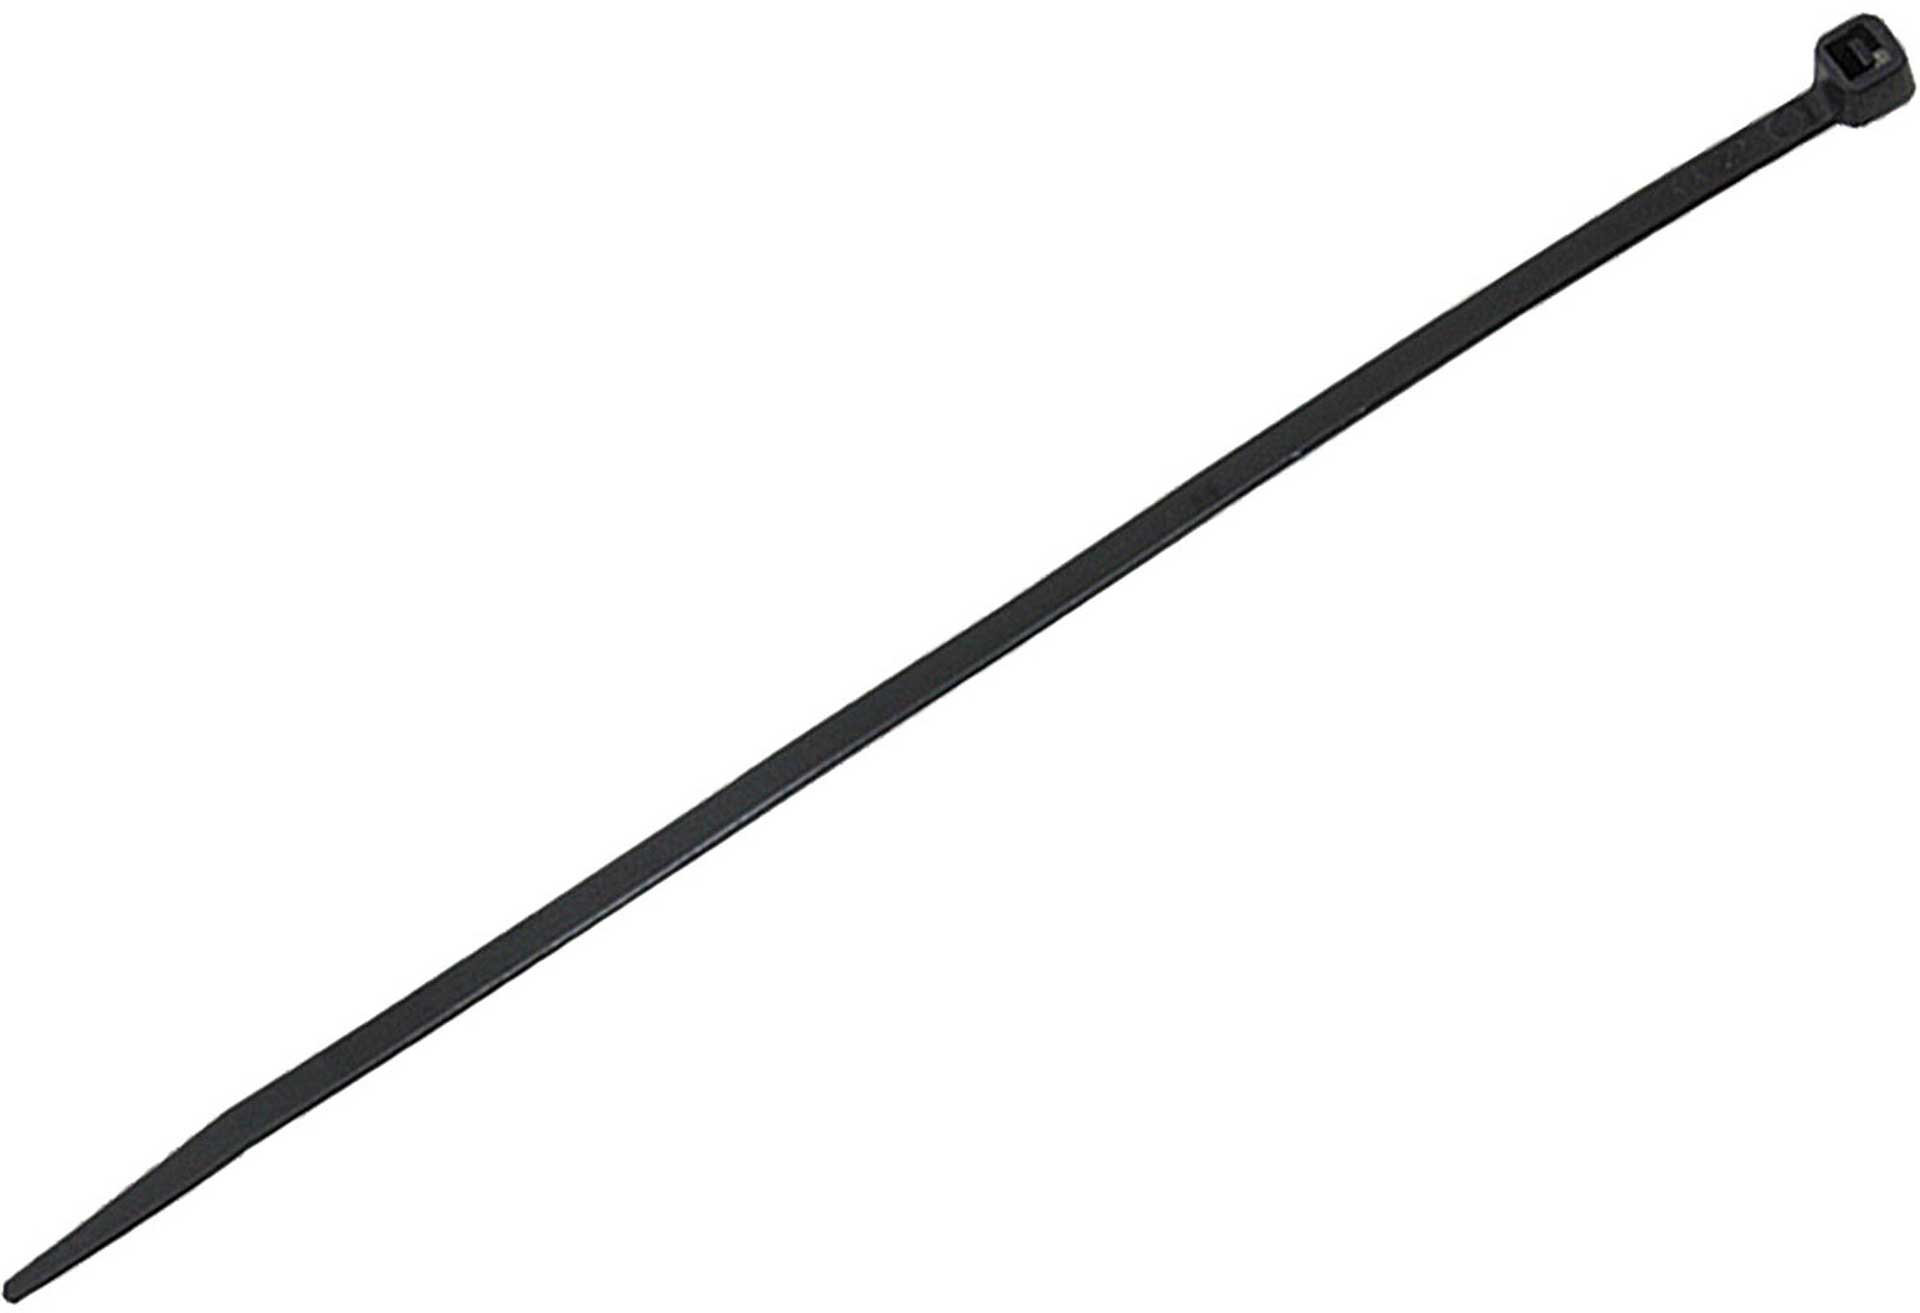 MODELLBAU LINDINGER CABLE STRAPS 100/2,5MM 100PCS. BLACK